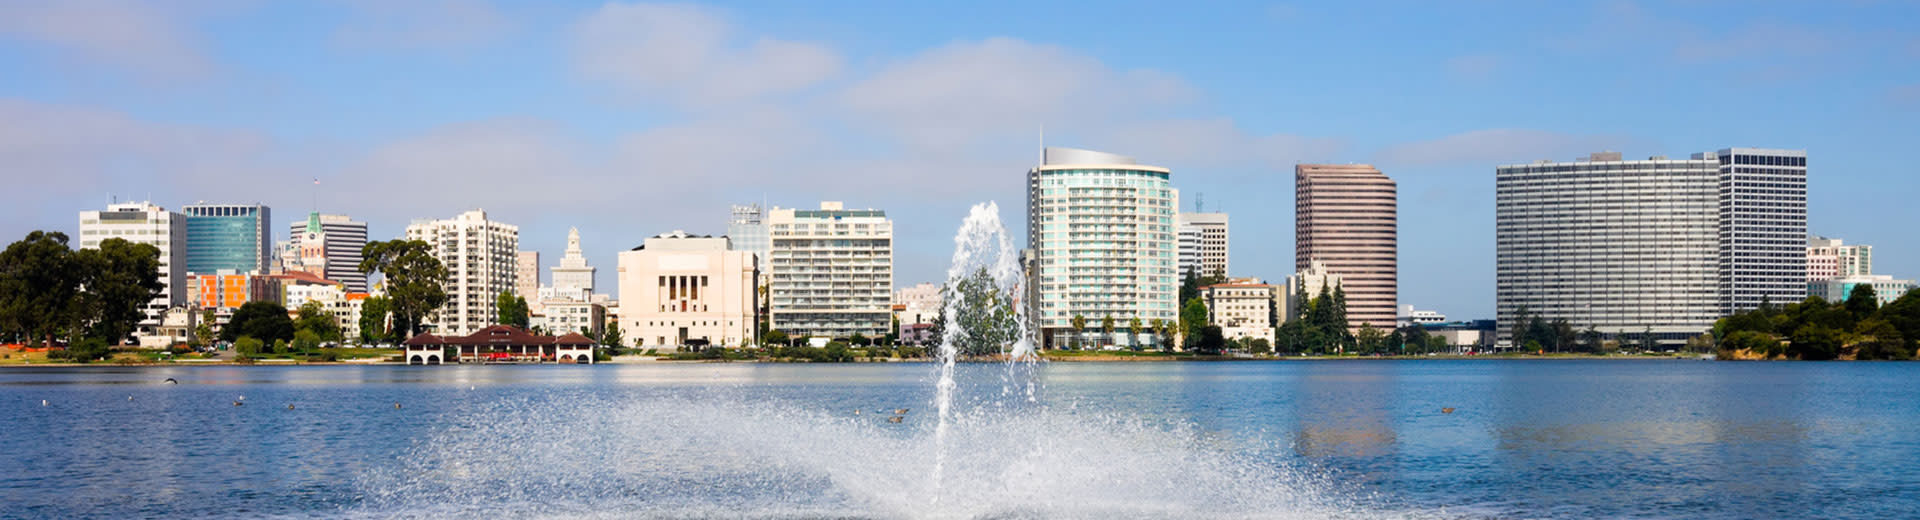 Les gratte-ciel d'Oakland s'assoient derrière un plan d'eau, avec une fontaine dans le contrefaçon.